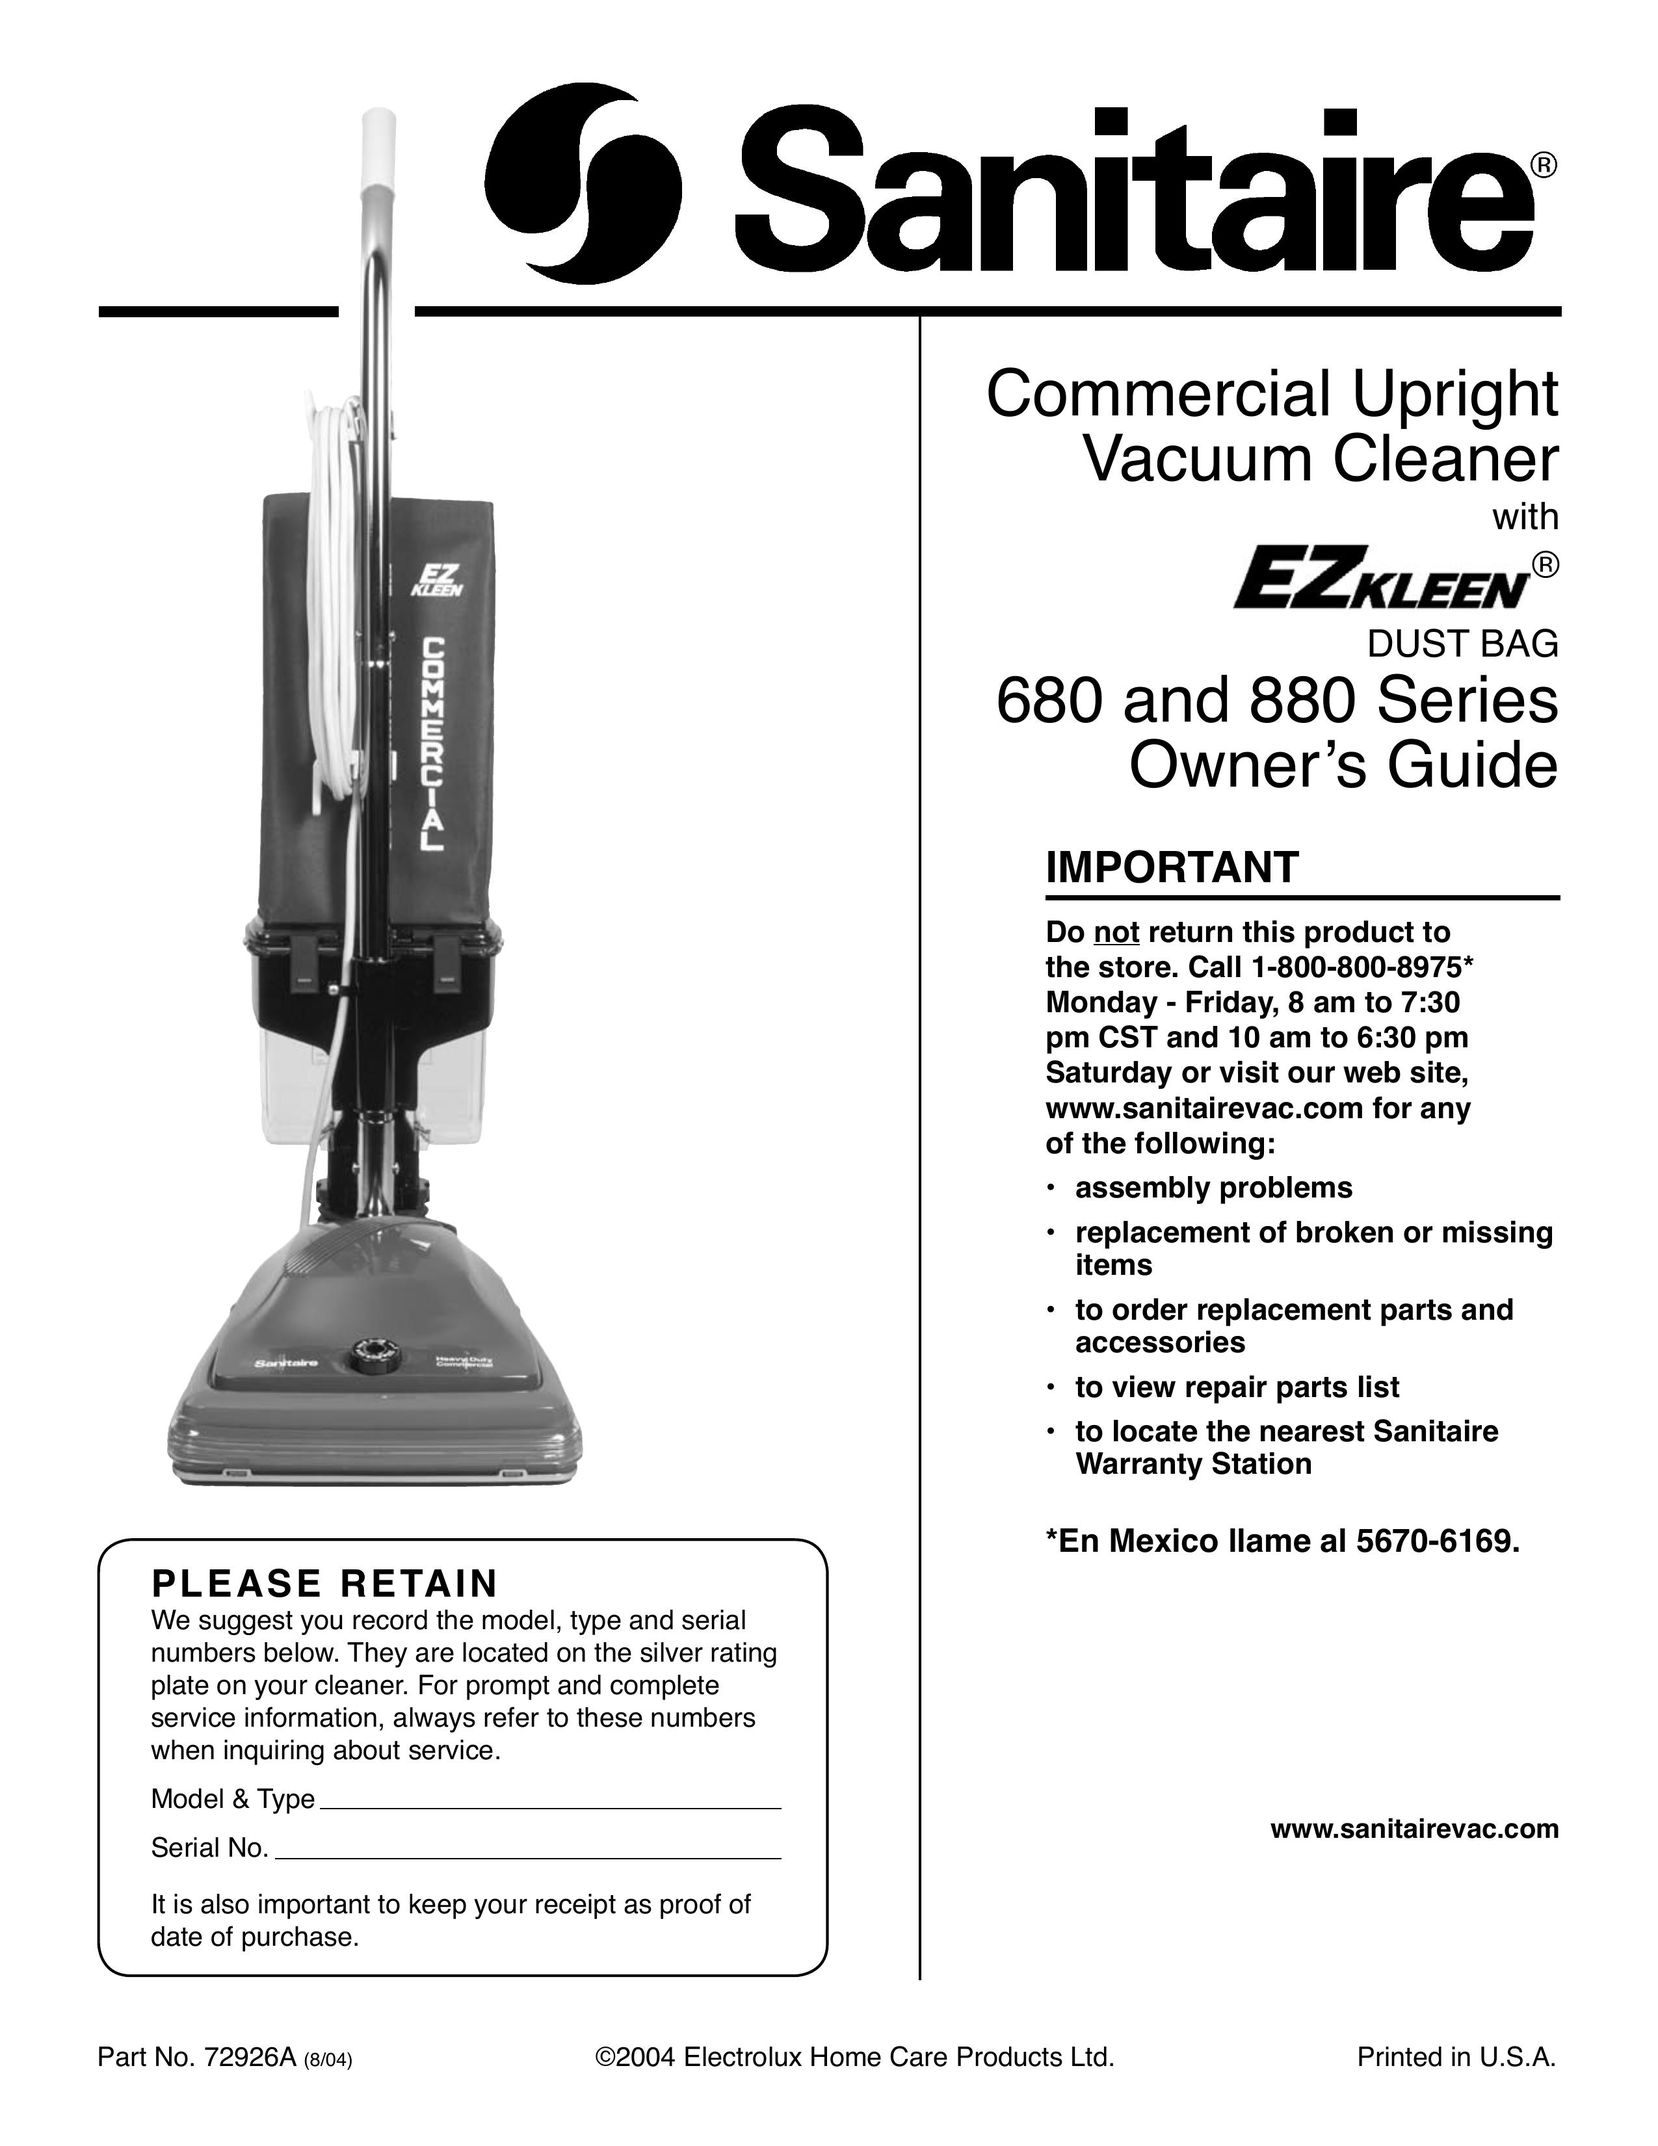 Sanitaire 880 Series Vacuum Cleaner User Manual